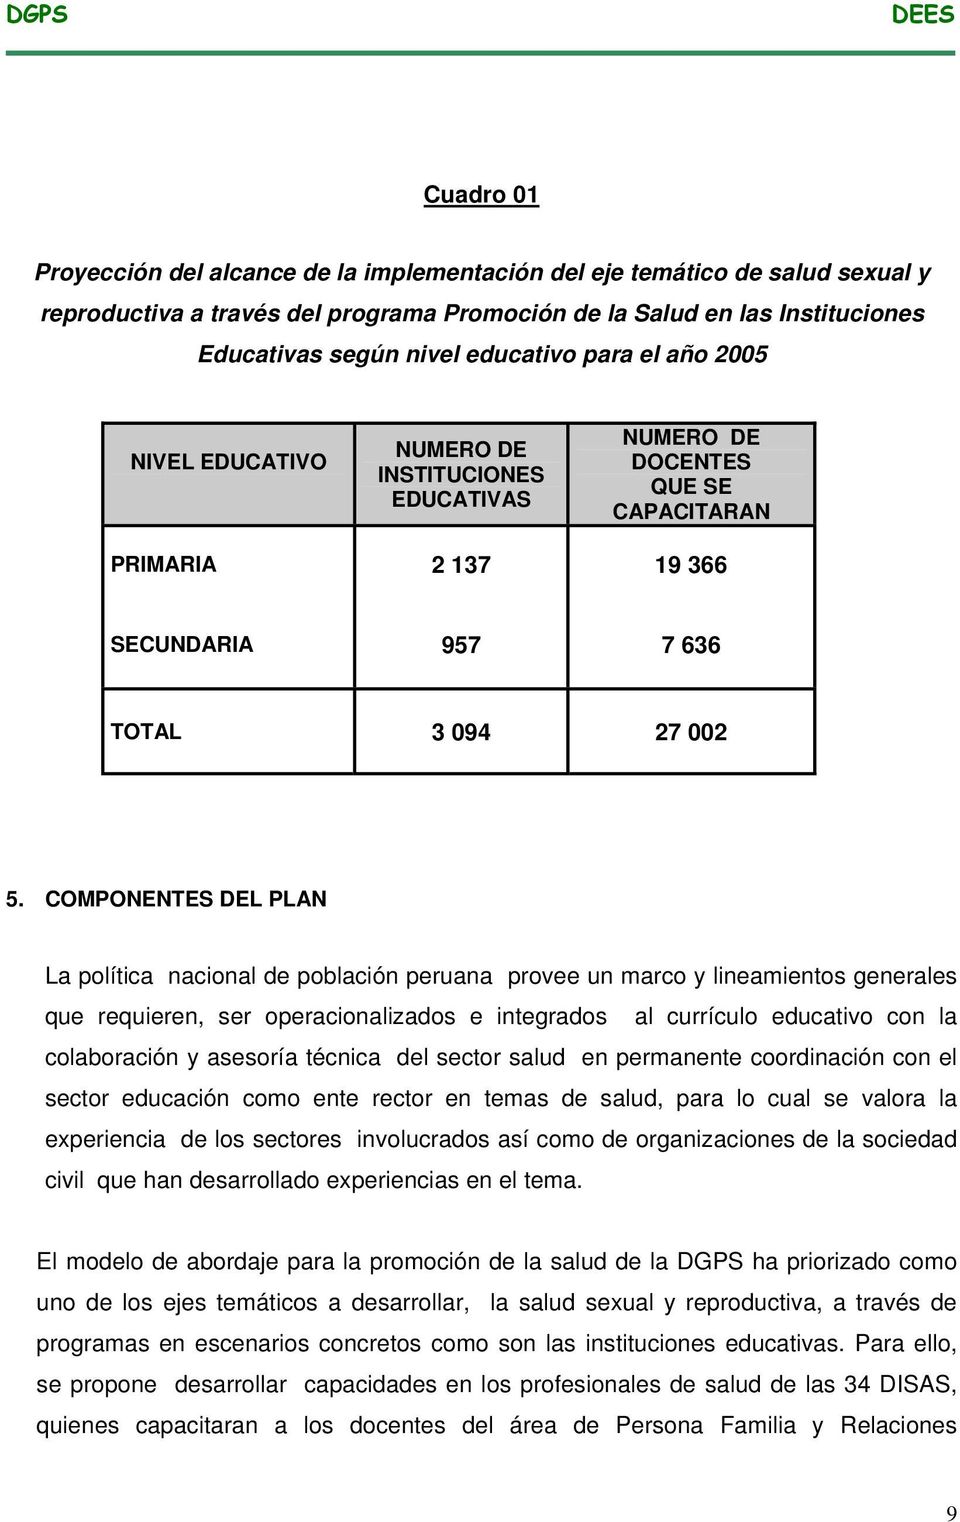 COMPONENTES DEL PLAN La política nacional de población peruana provee un marco y lineamientos generales que requieren, ser operacionalizados e integrados al currículo educativo con la colaboración y